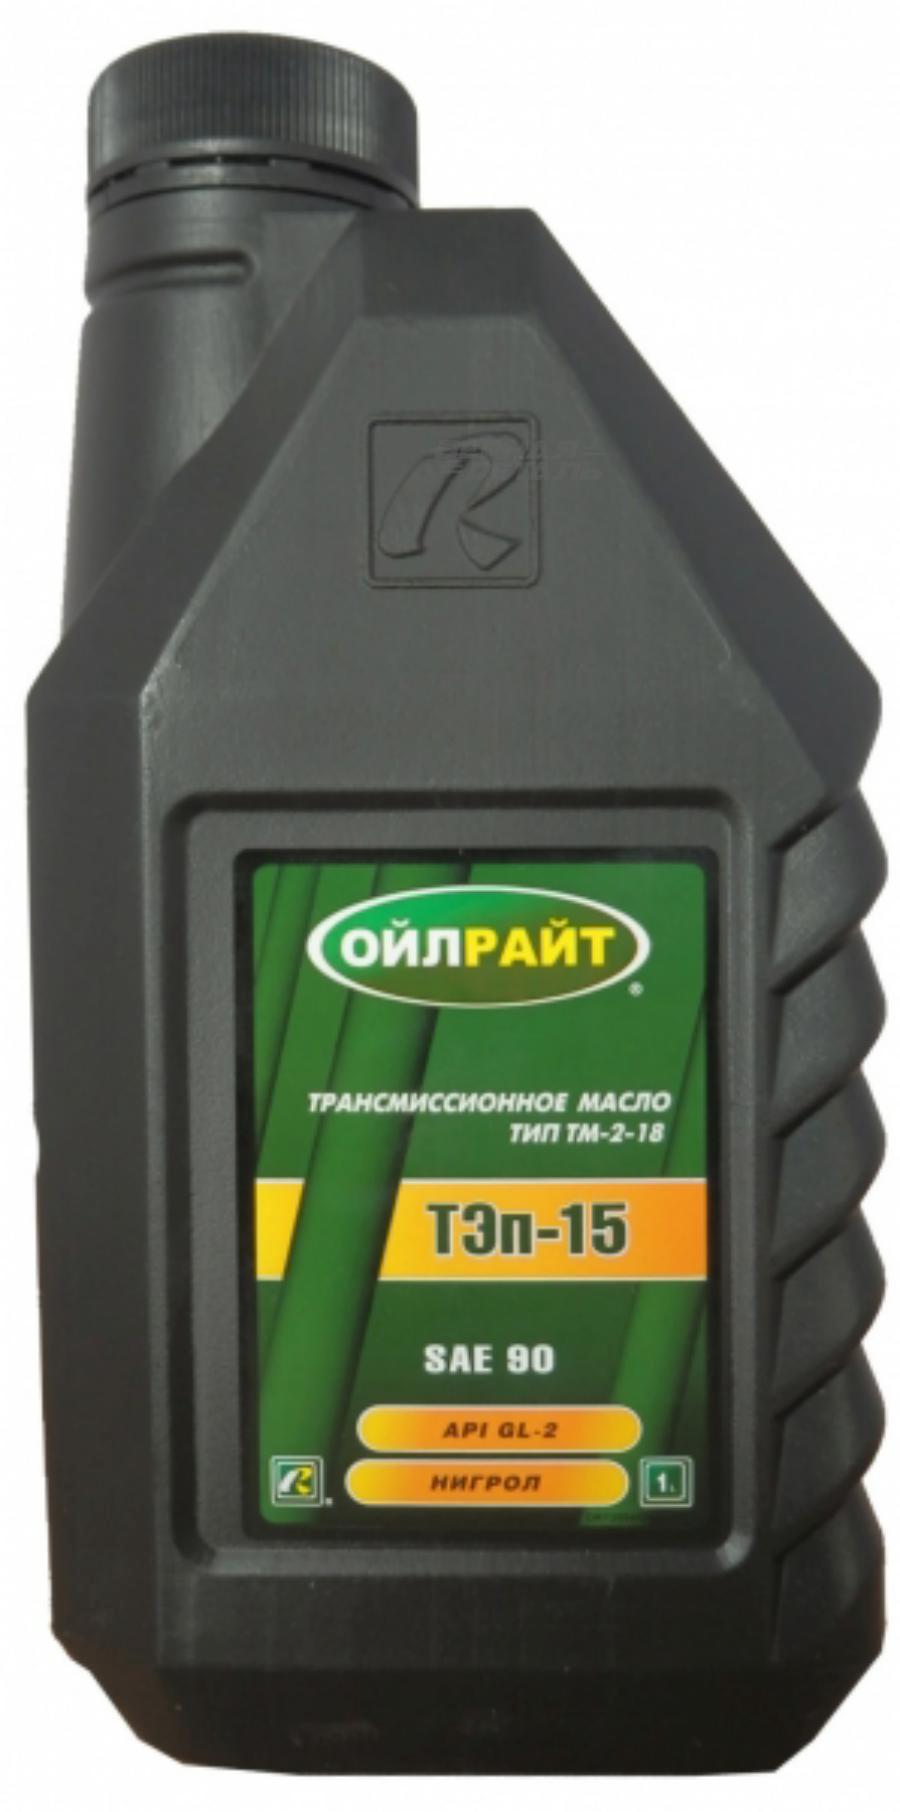 2554 OIL RIGHT Масло трансмиссионное минеральное Тэп-15В Тип TM-2-18 90, 1л